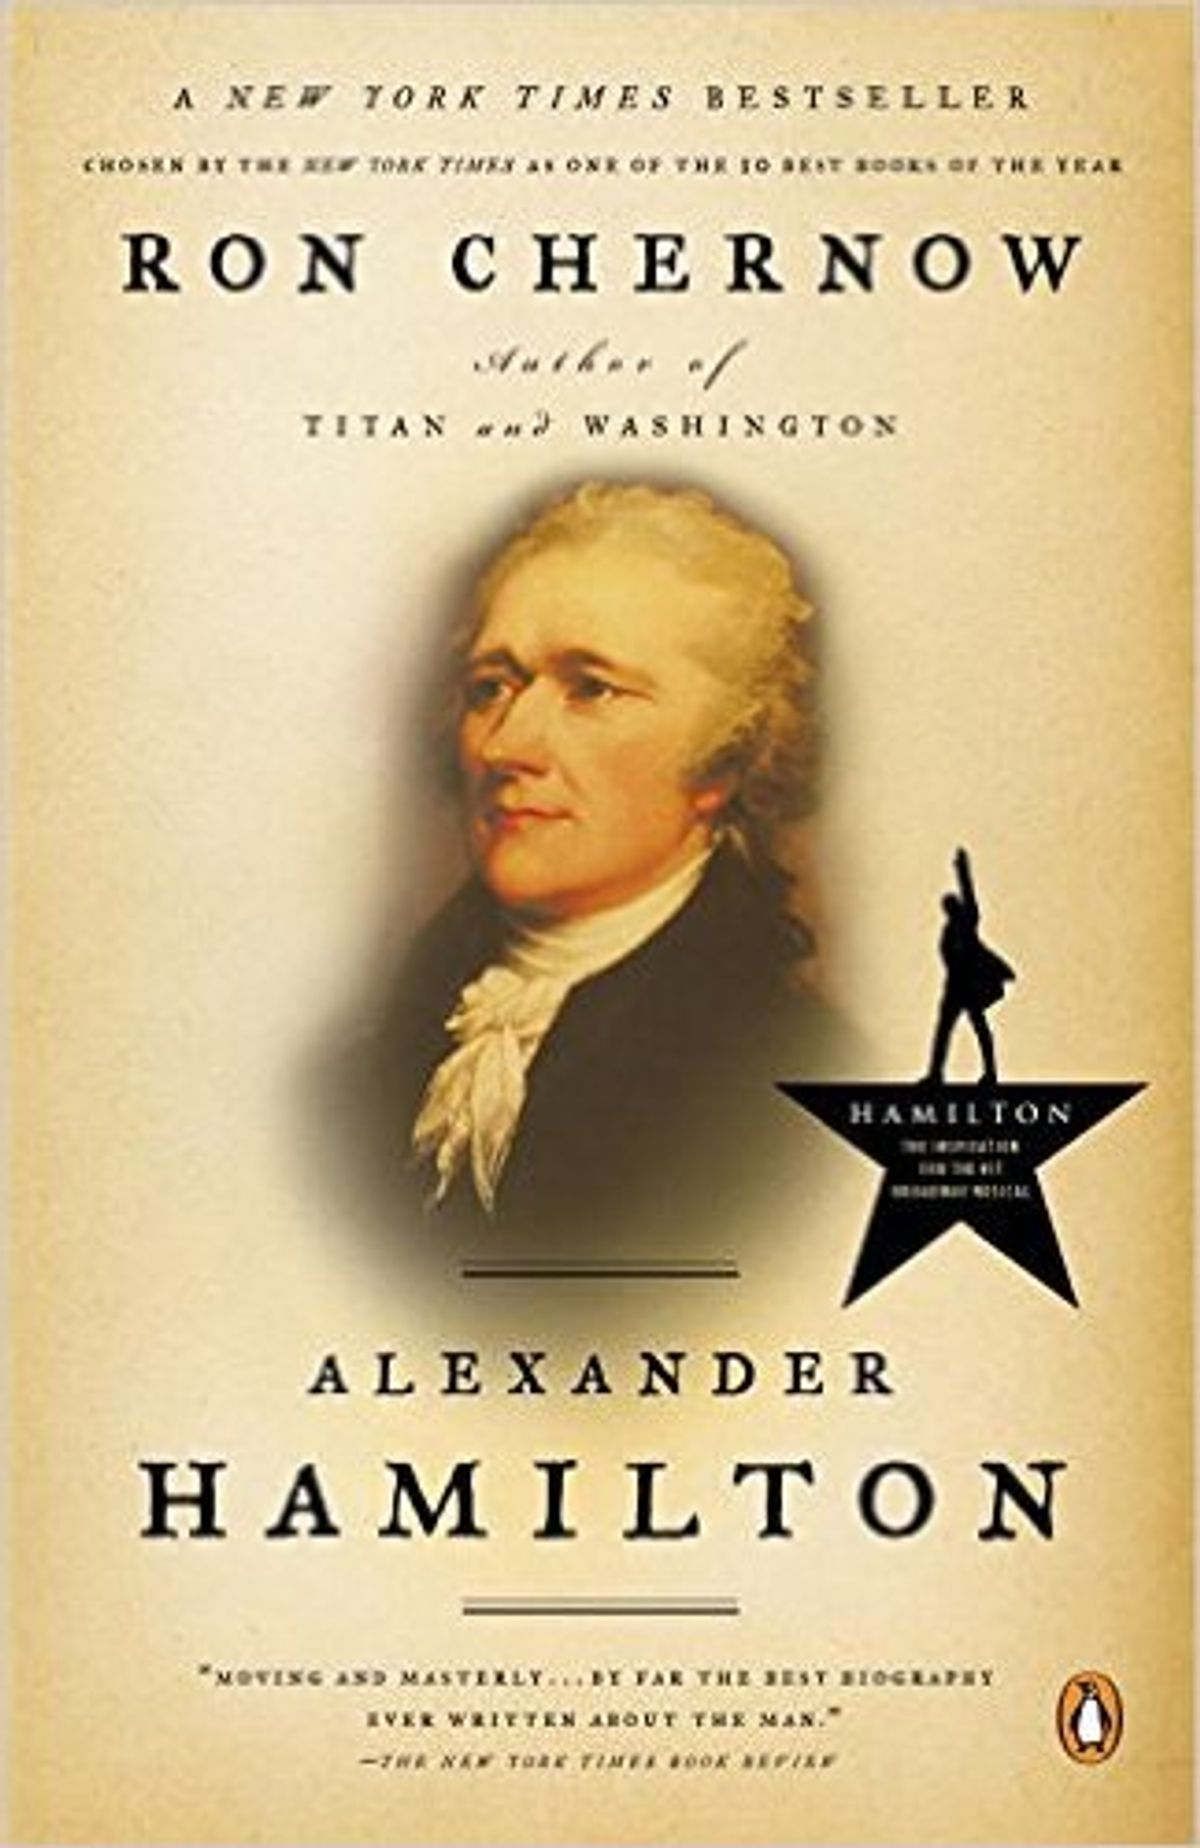 7 Facts About Hamilton 'Hamilton' Left Out